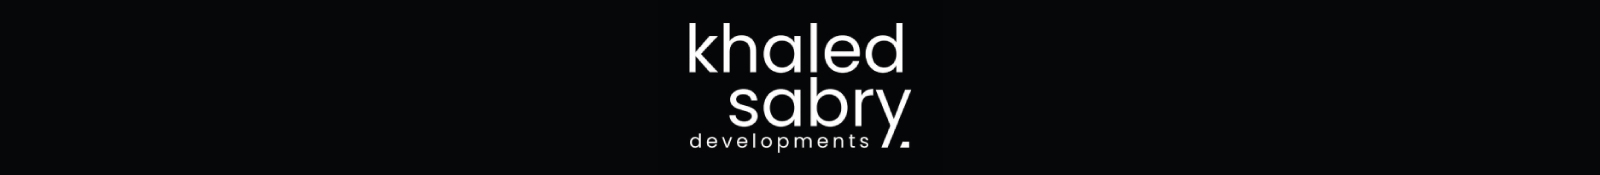 Khaled Sabry Holding